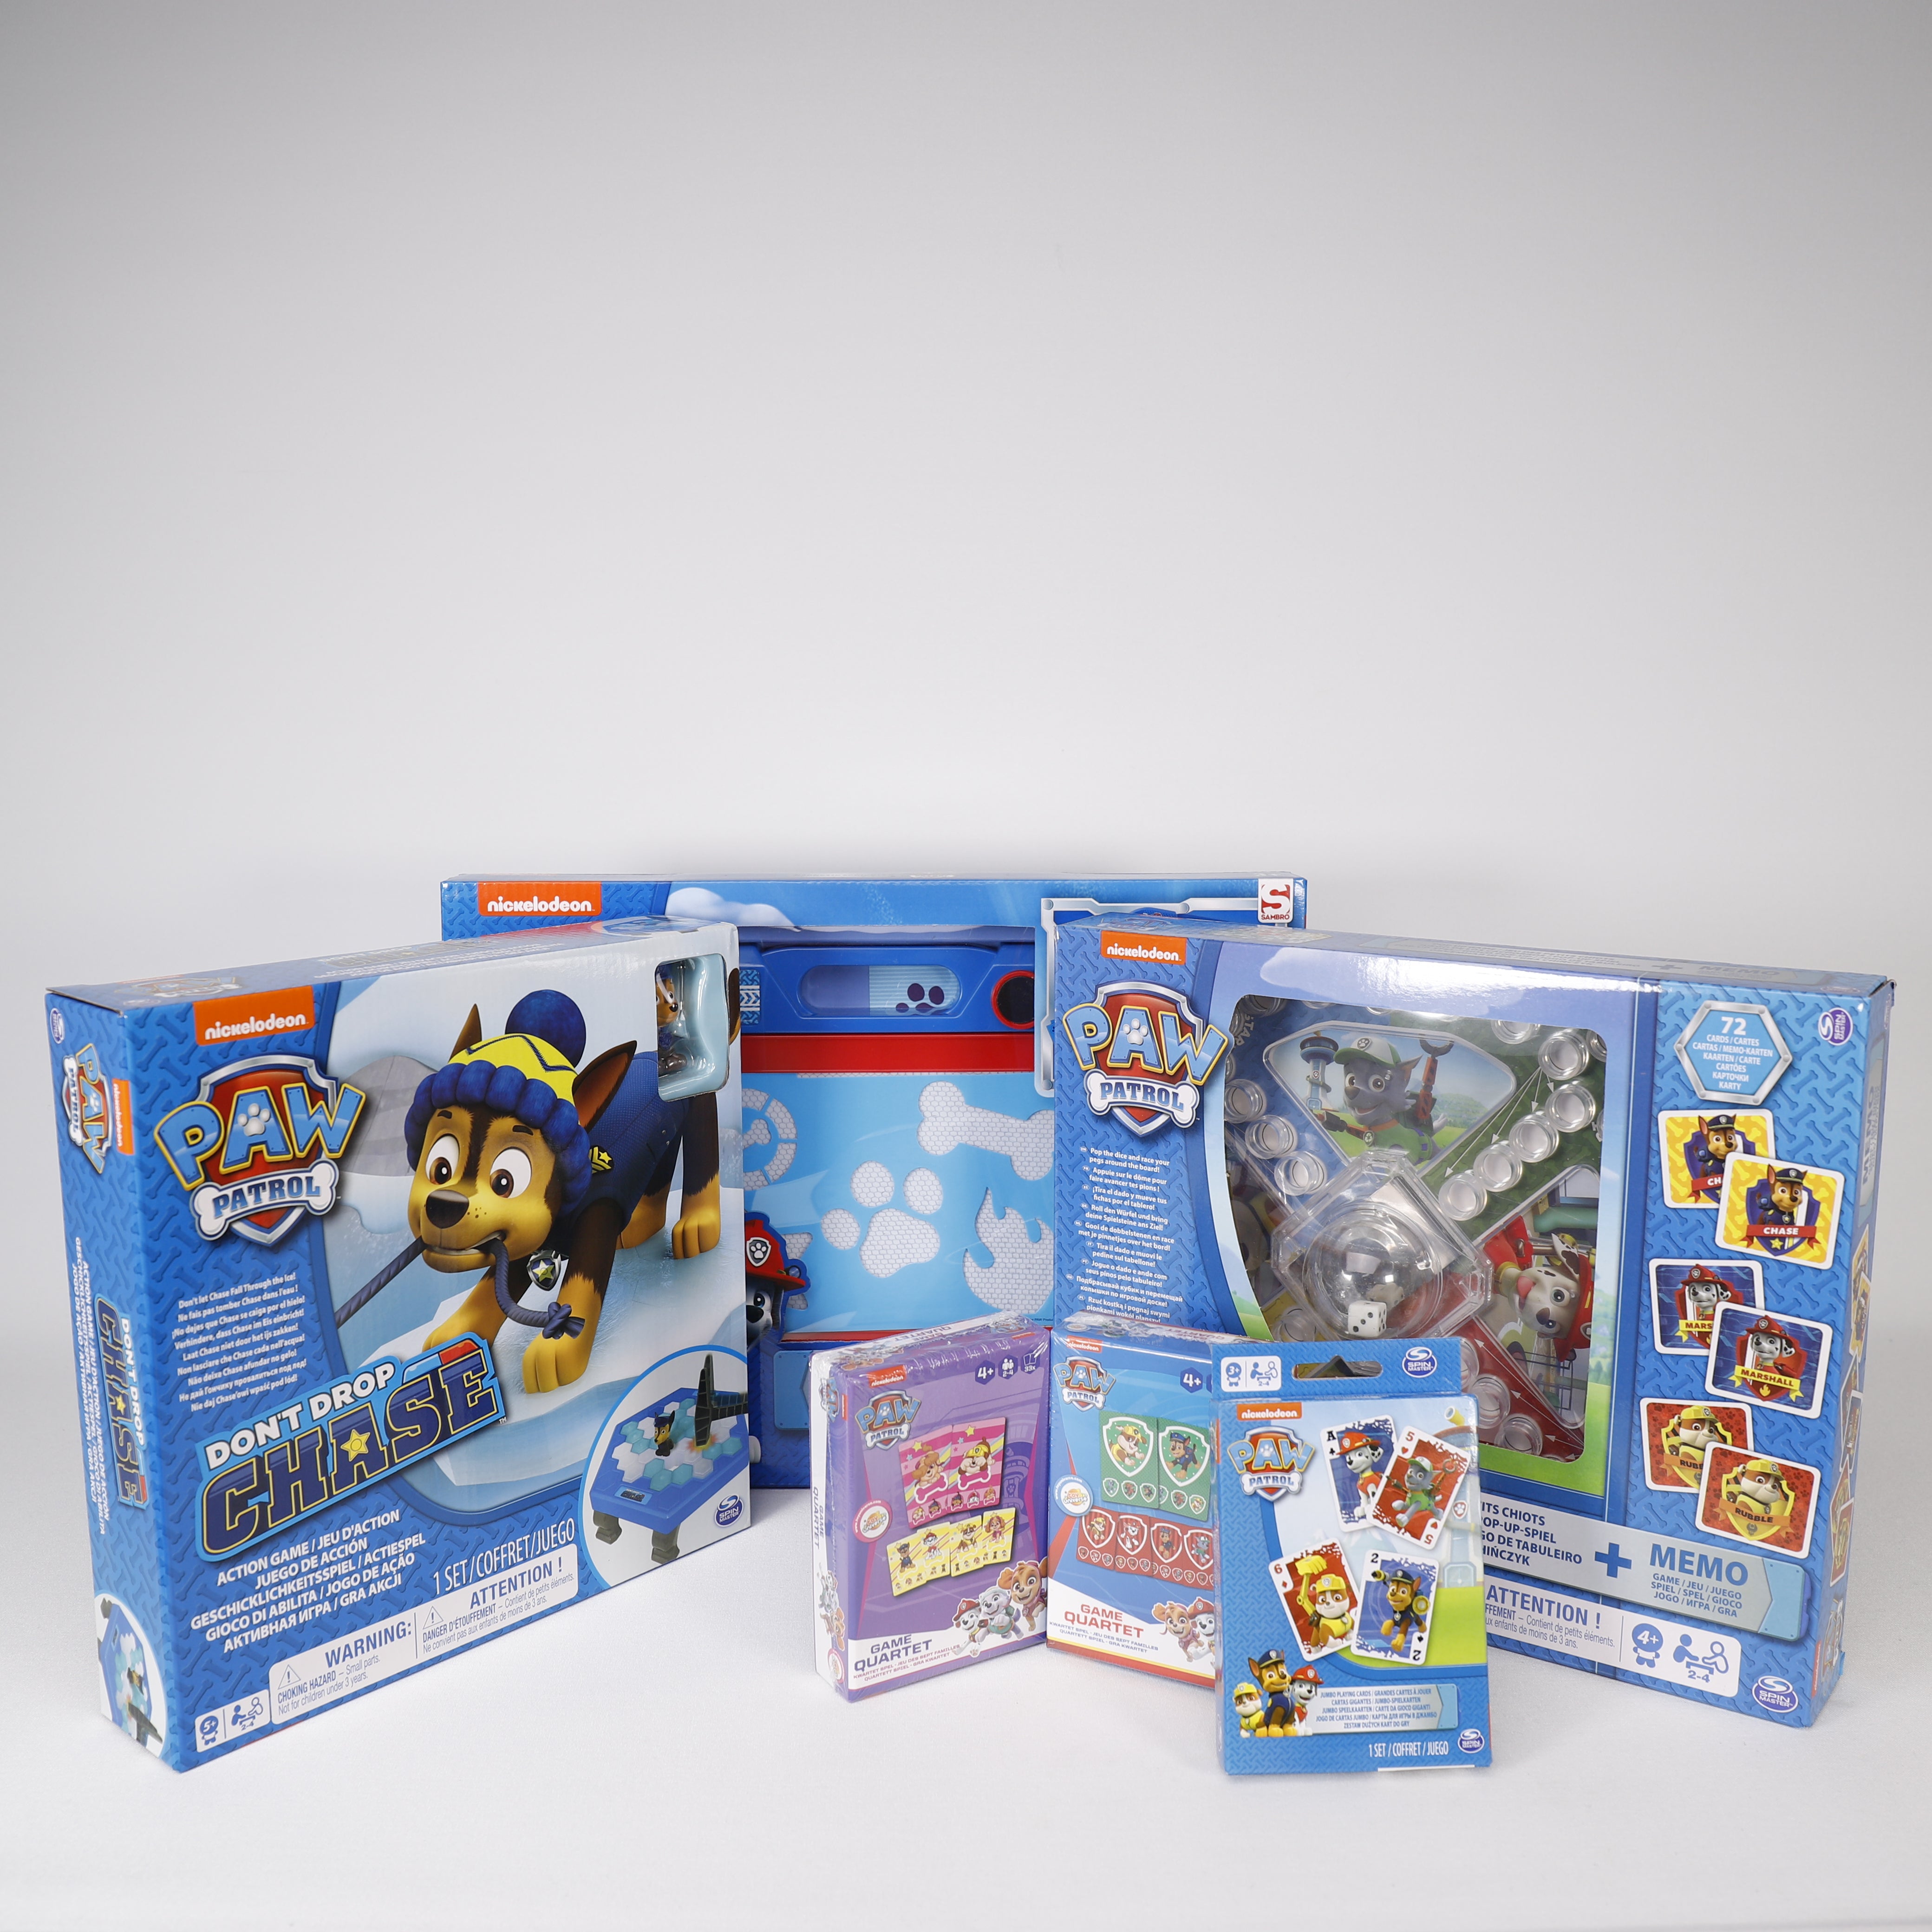 Paw Patrol Jumbo Spielkarten 9x14cm Gesellschaftsspiel +3 Spielzeug, Nickelodeon